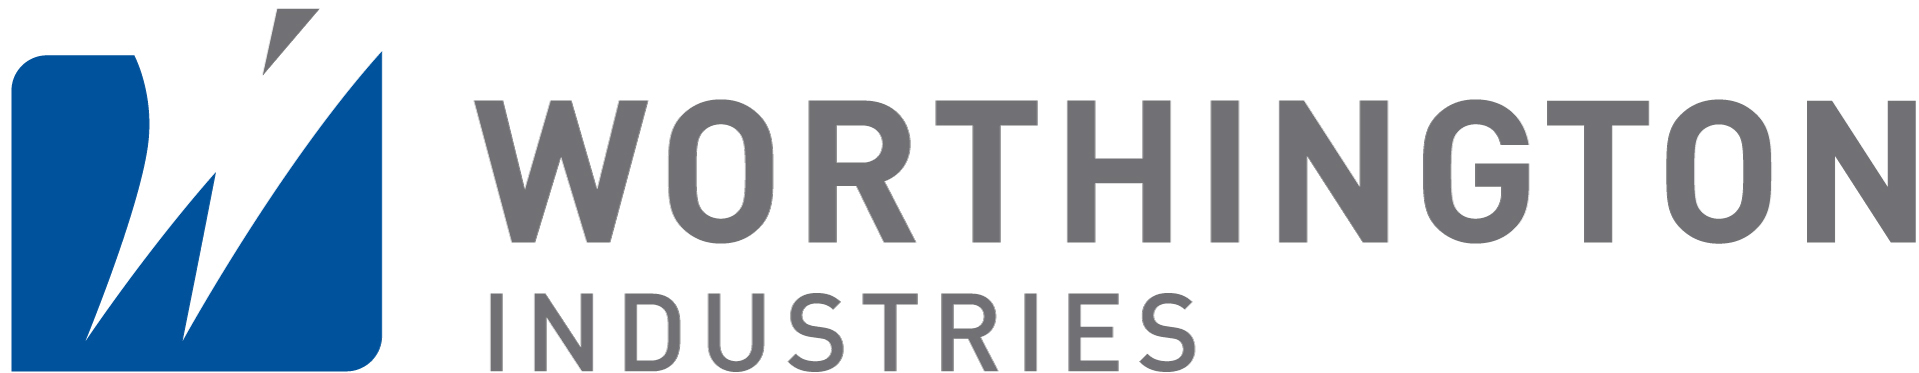 worthington logo